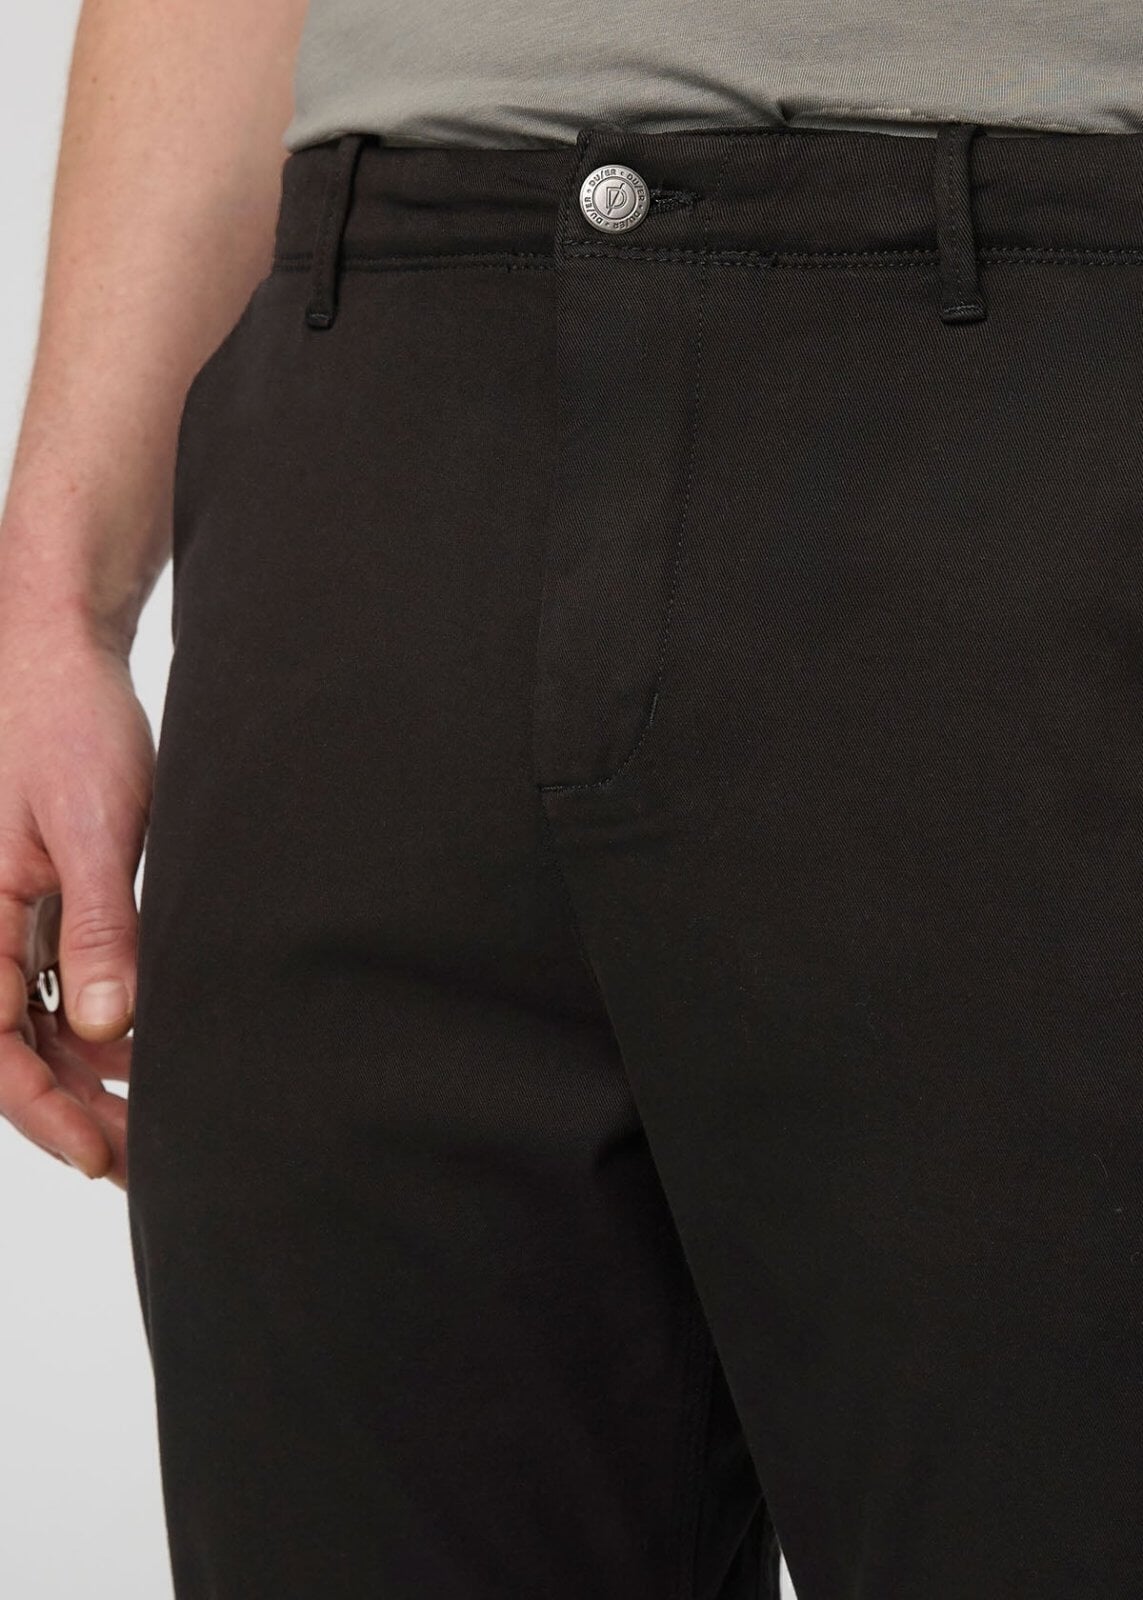 The DUER Black Stretch Tech Pants Belong In Every Closet - InsideHook